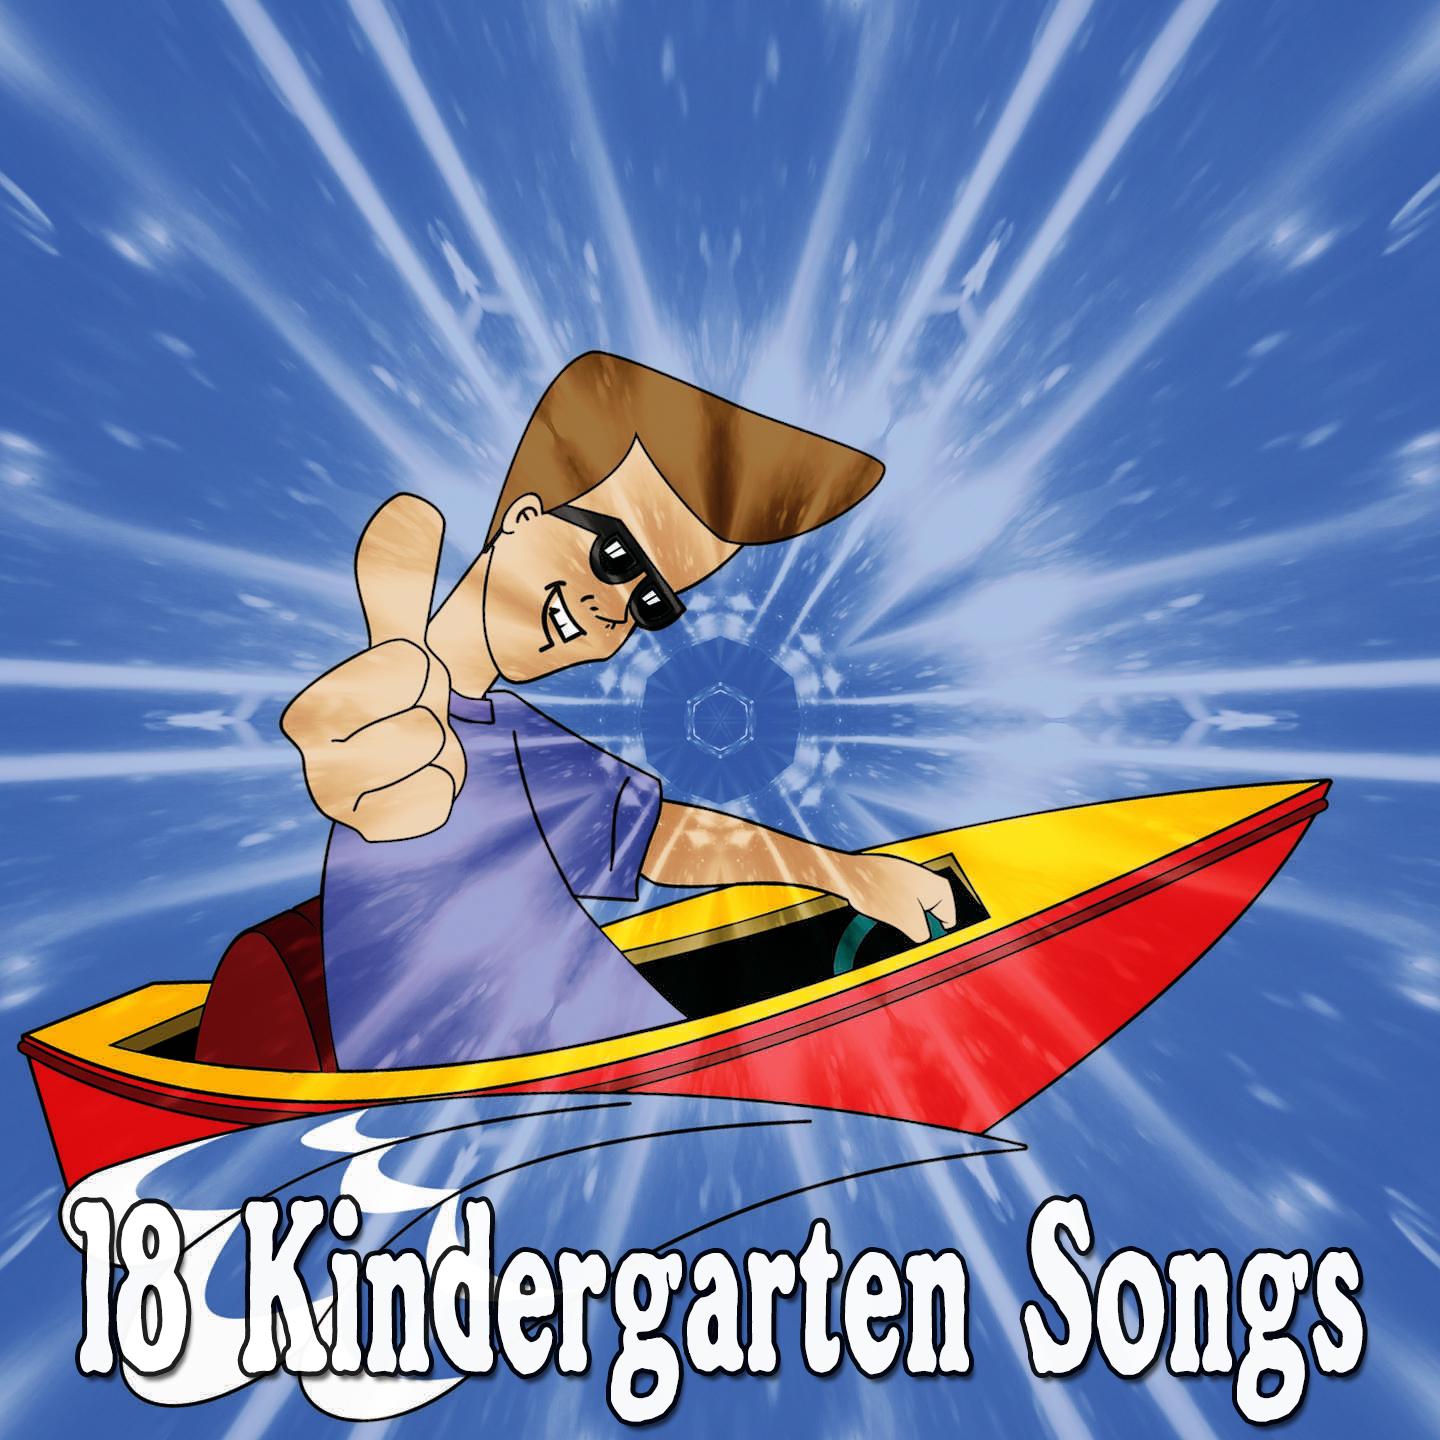 18 Kindergarten Songs